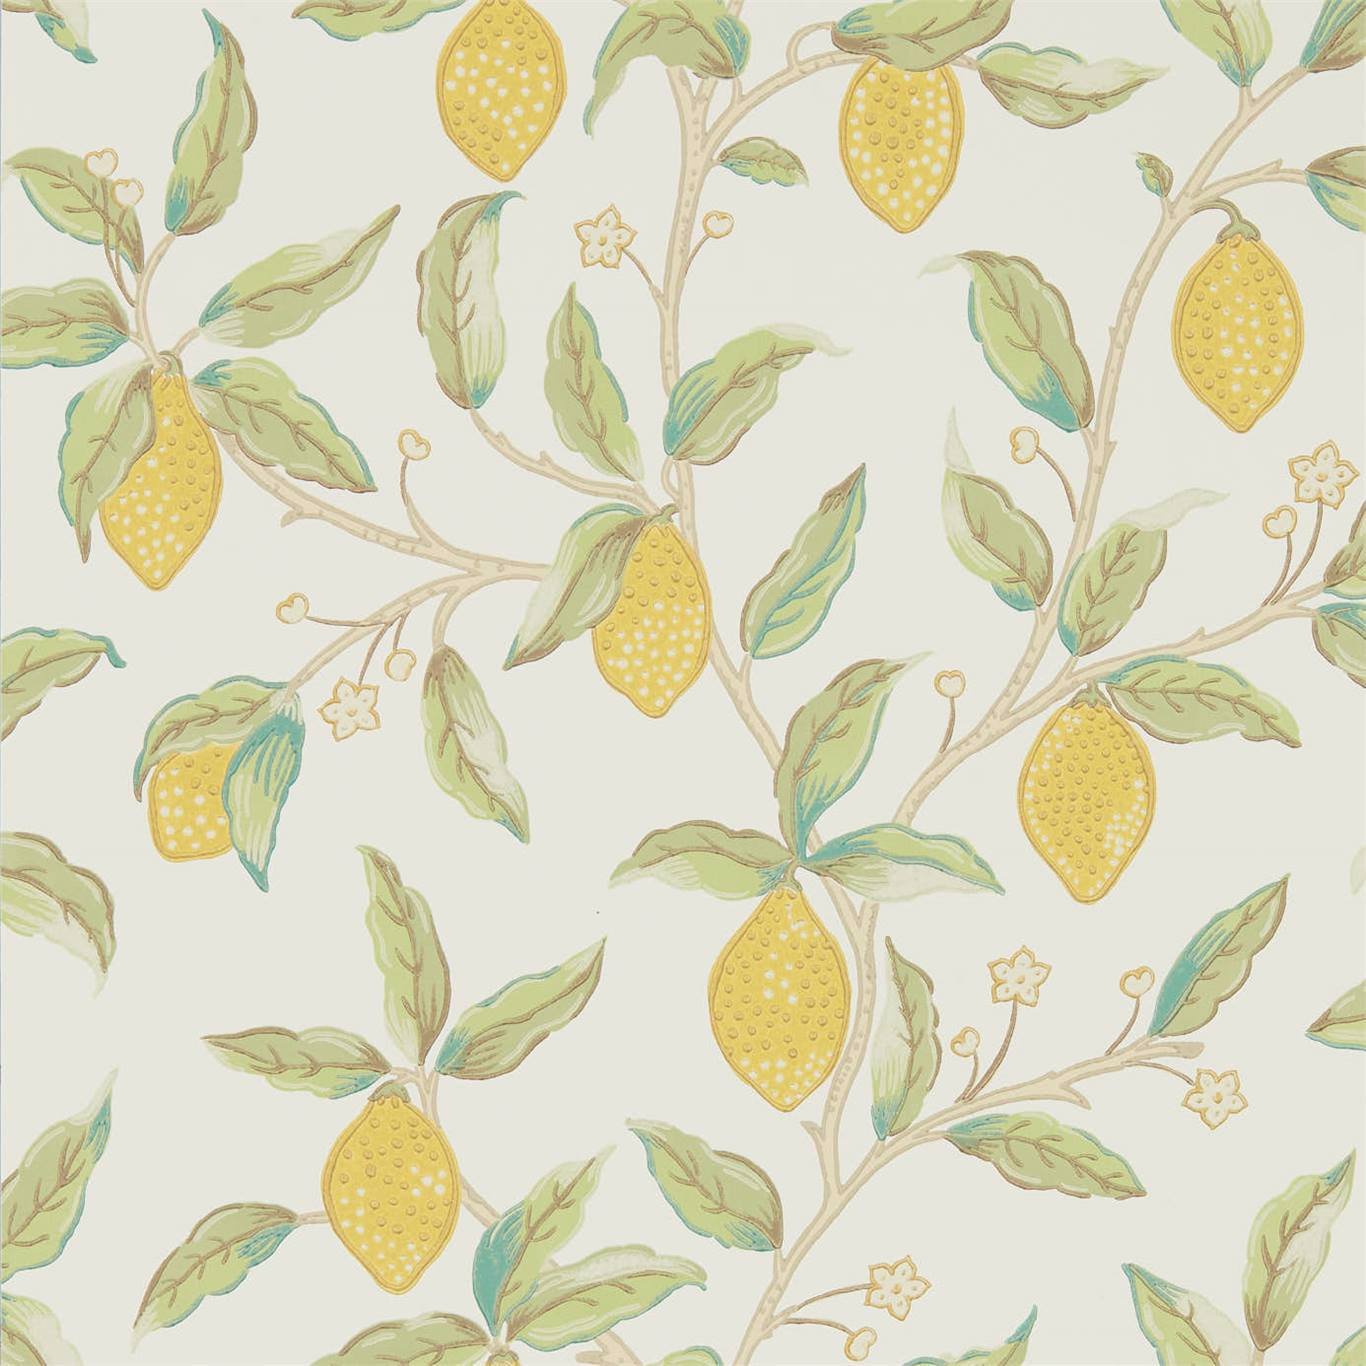 Lemon Tree Bay Leaf Wallpaper by MOR